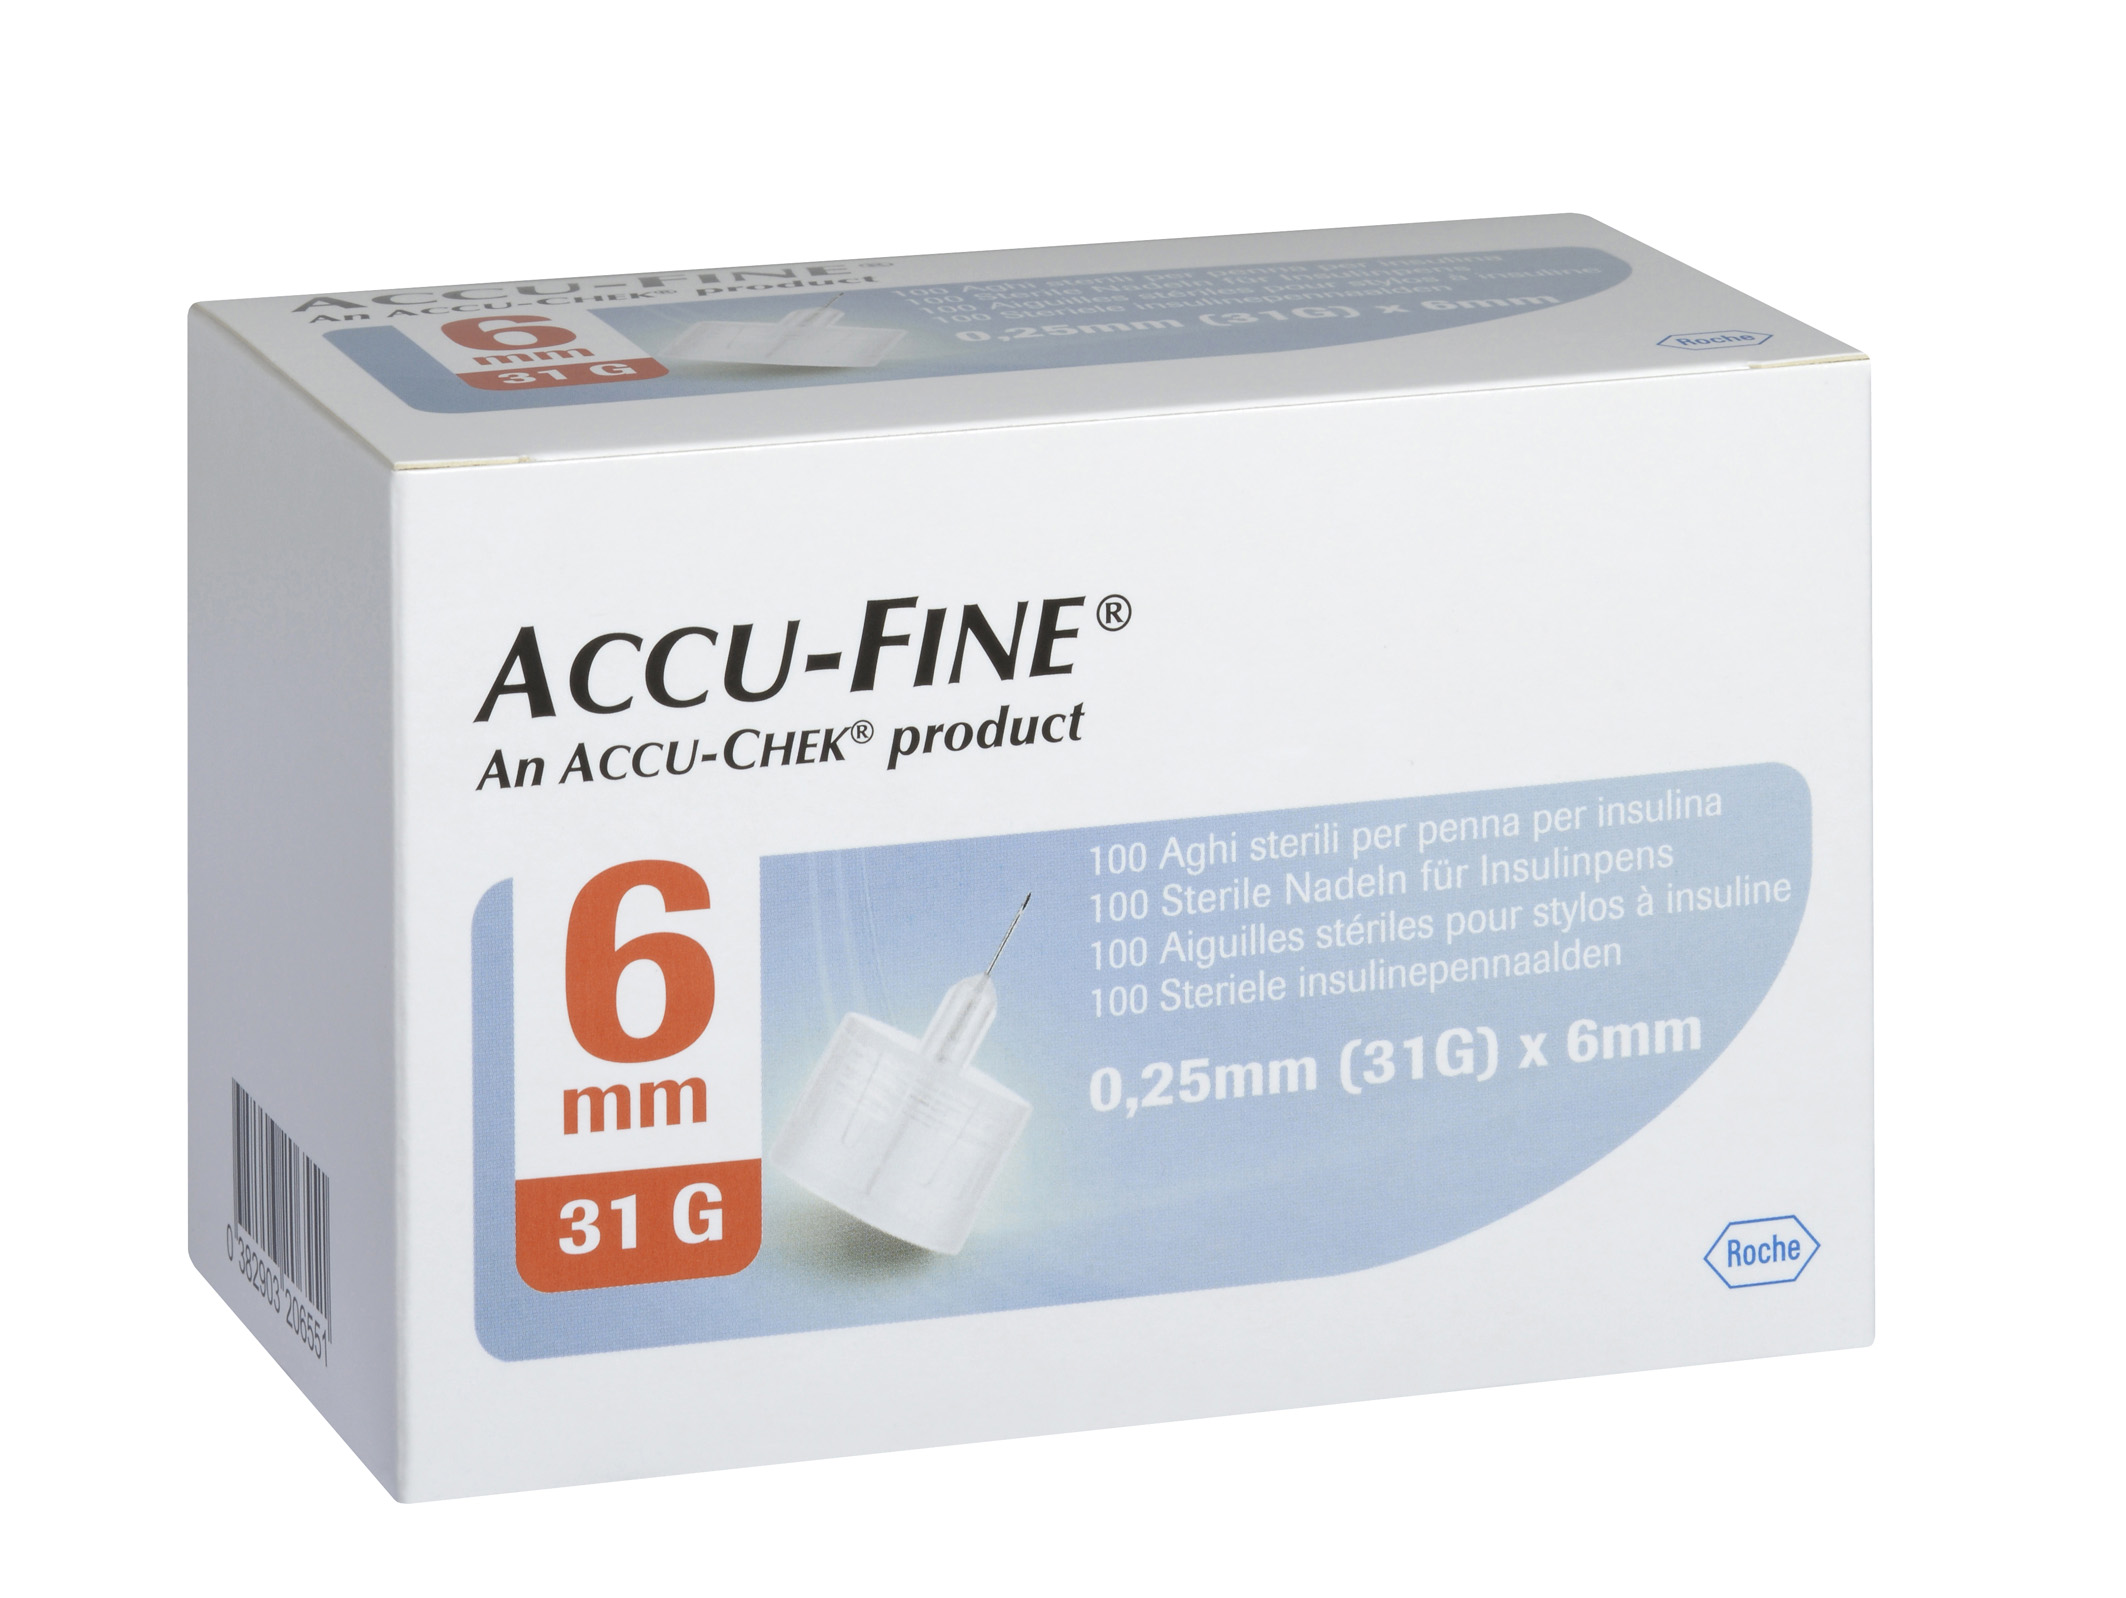 accu-fine (31g) 6mm